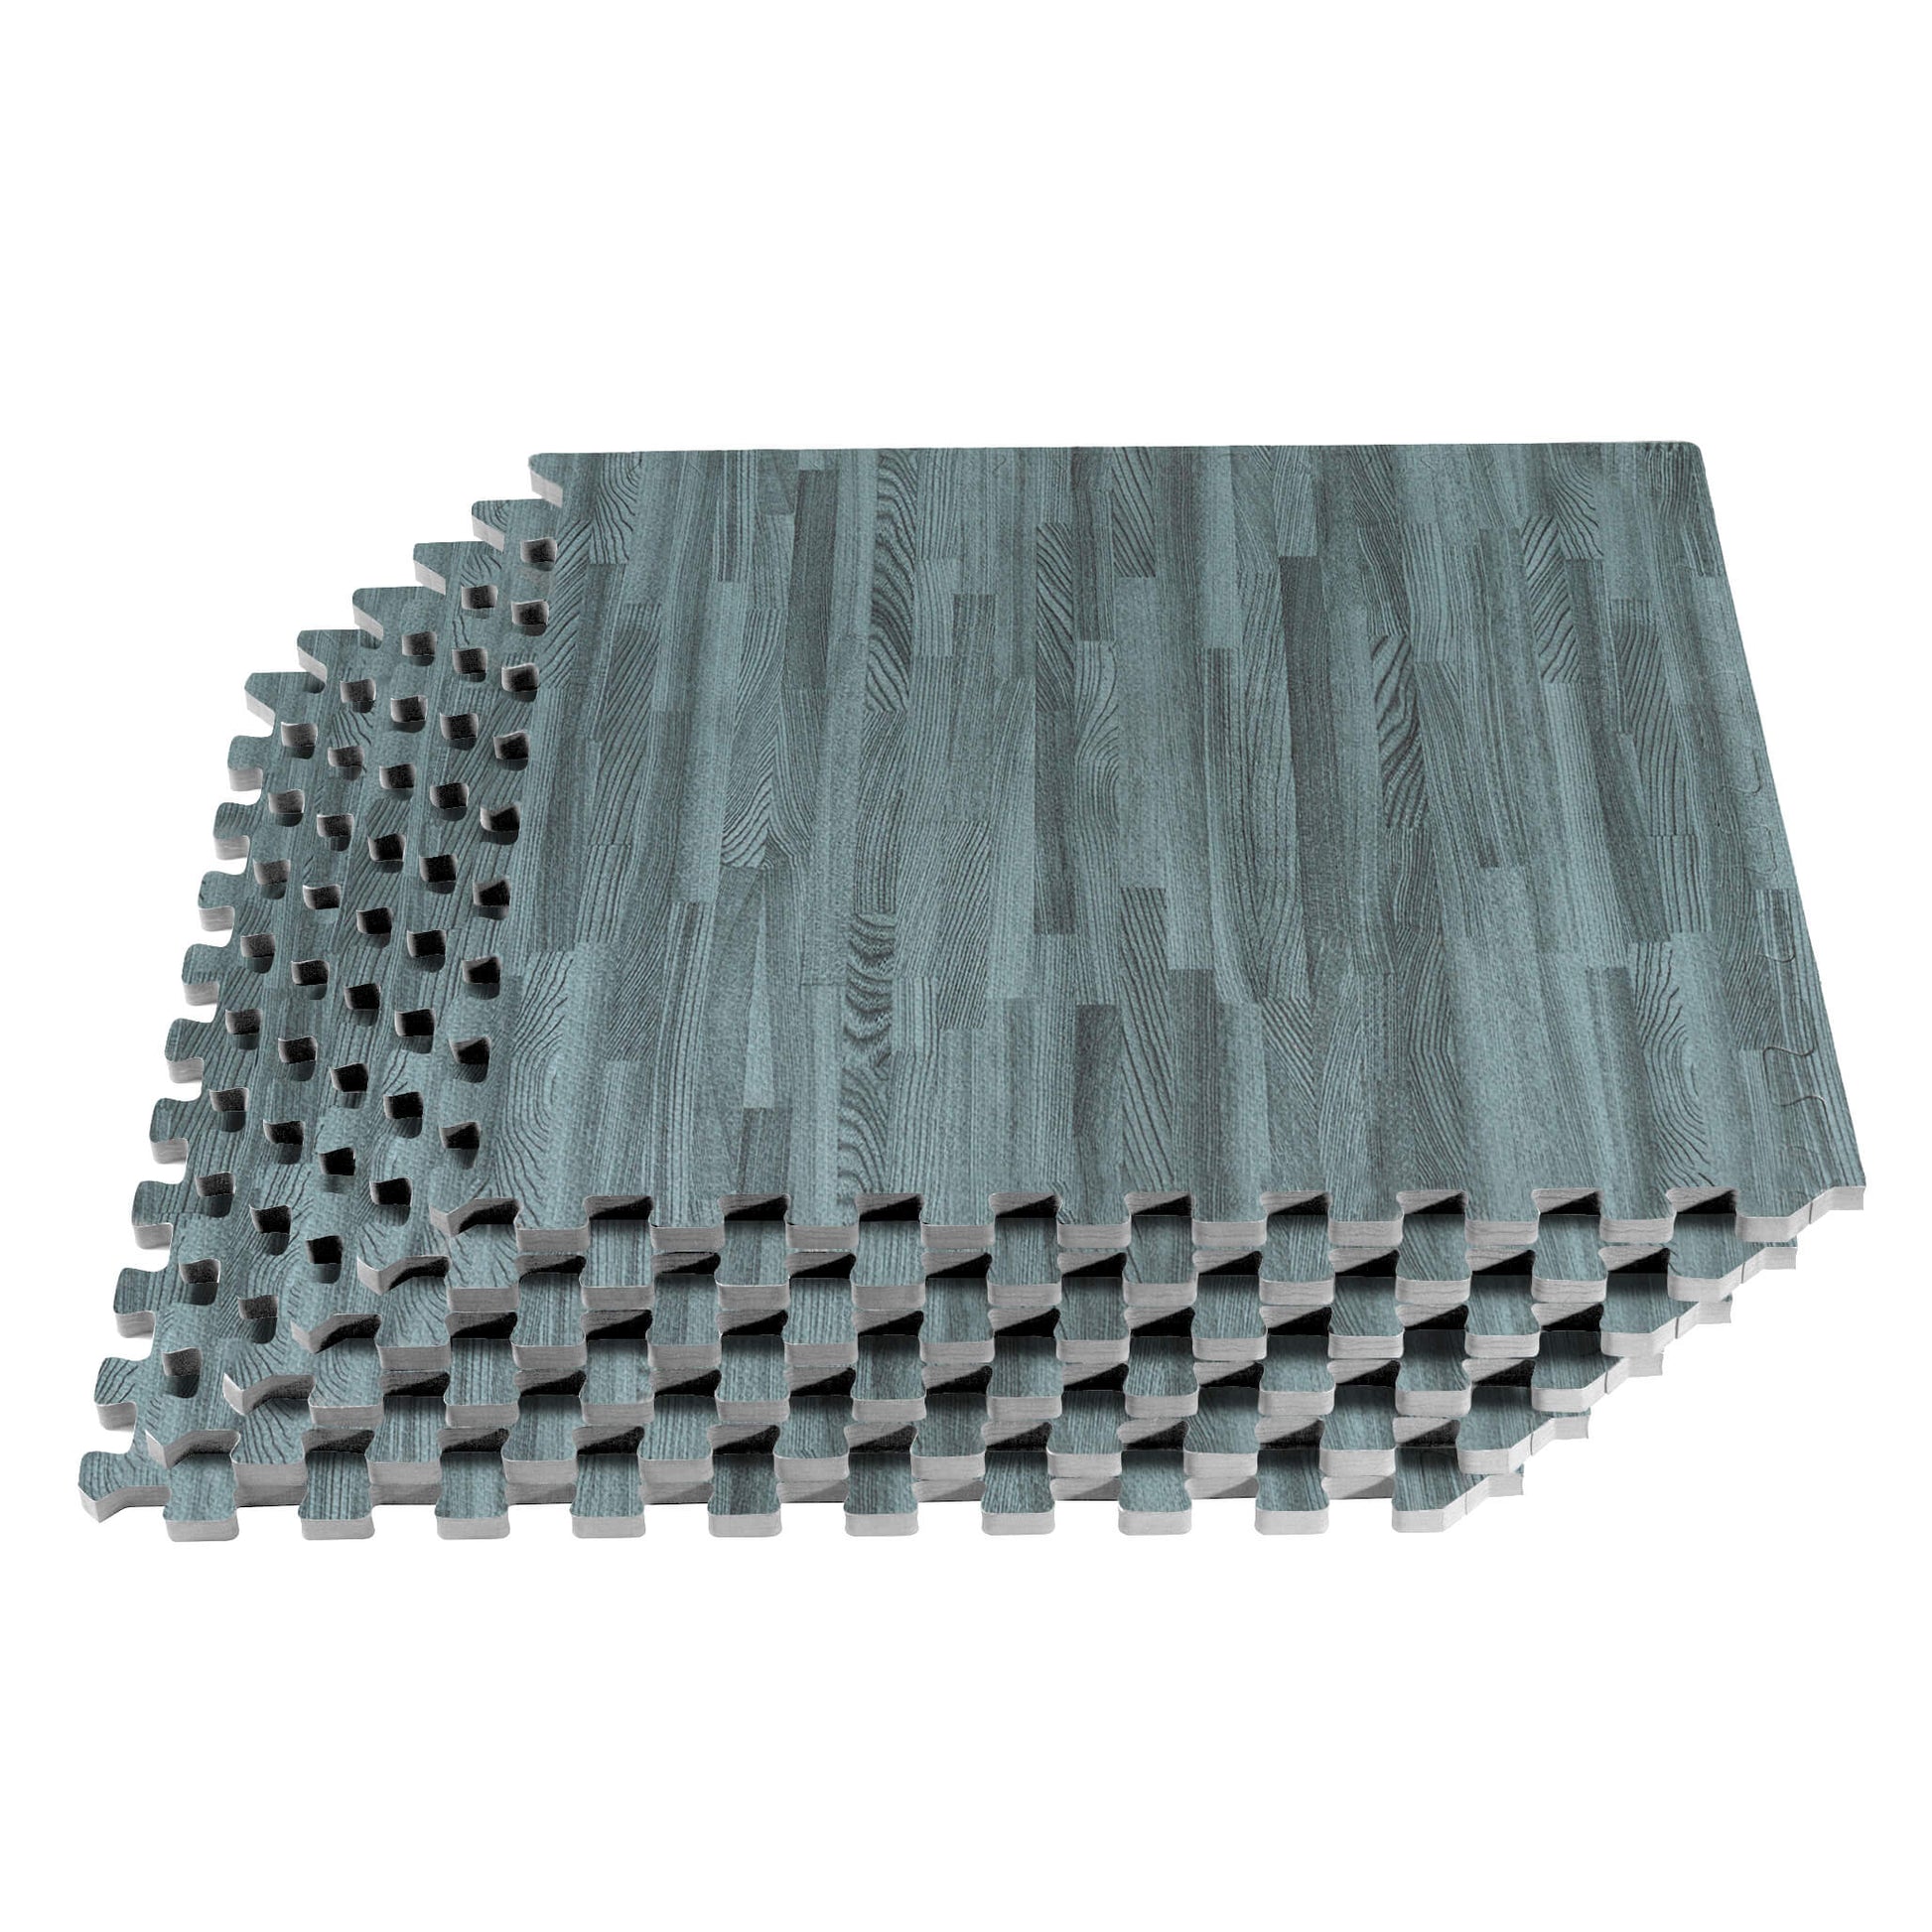 Forest Floor wood grain 5/8" thick foam floor mats